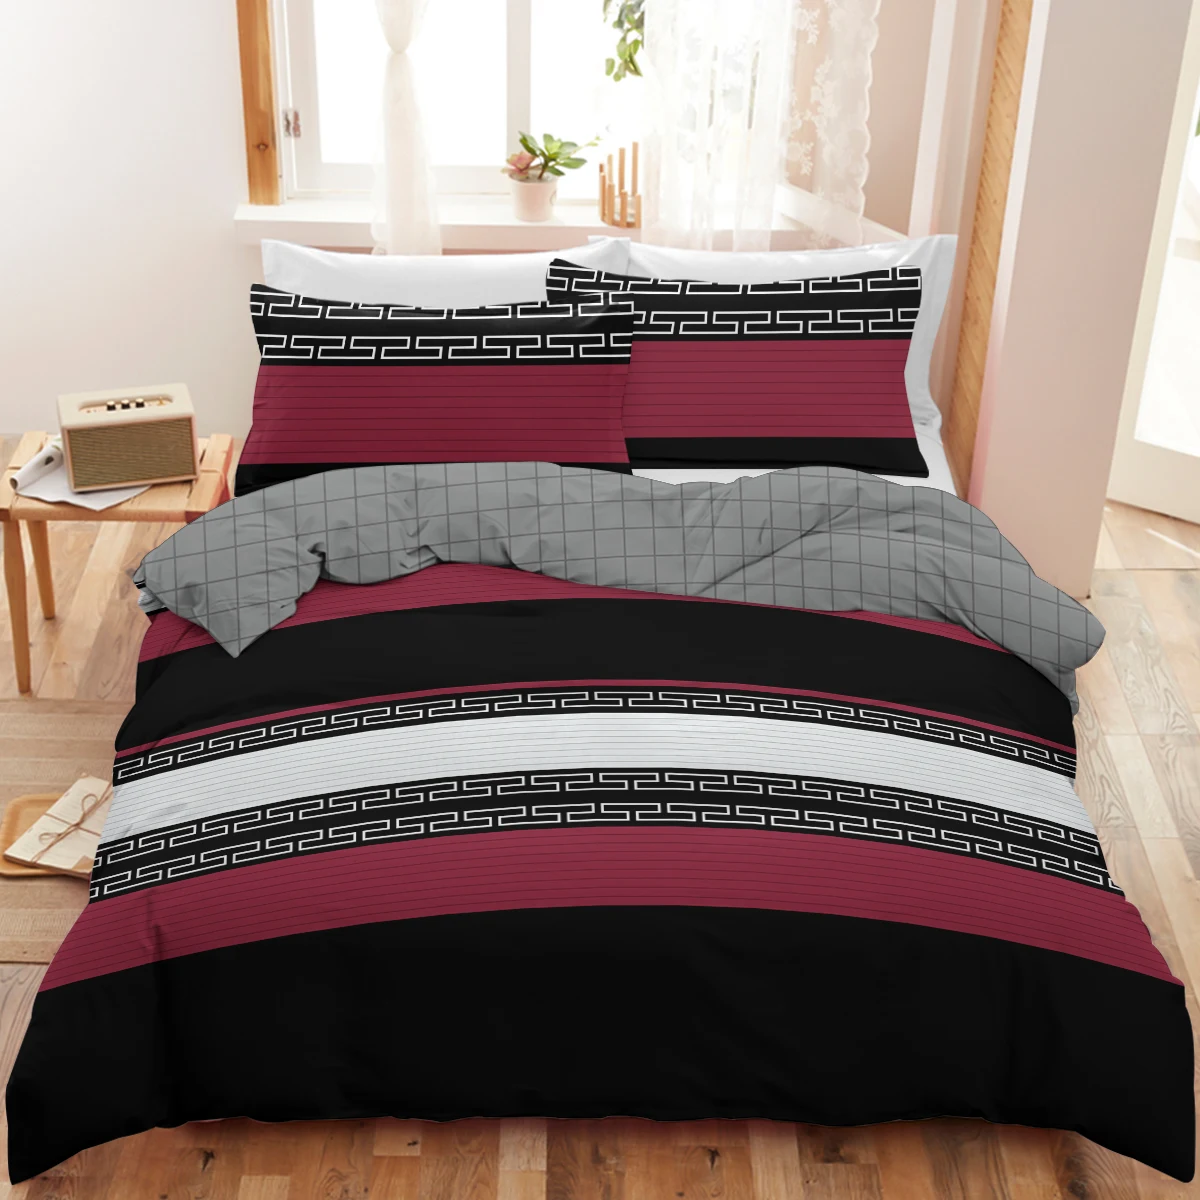 

Комплект постельного белья из 3 предметов с черными и красными полосками, набор пододеяльников с необычным геометрическим узором, мягкое одеяло с 2 наволочками